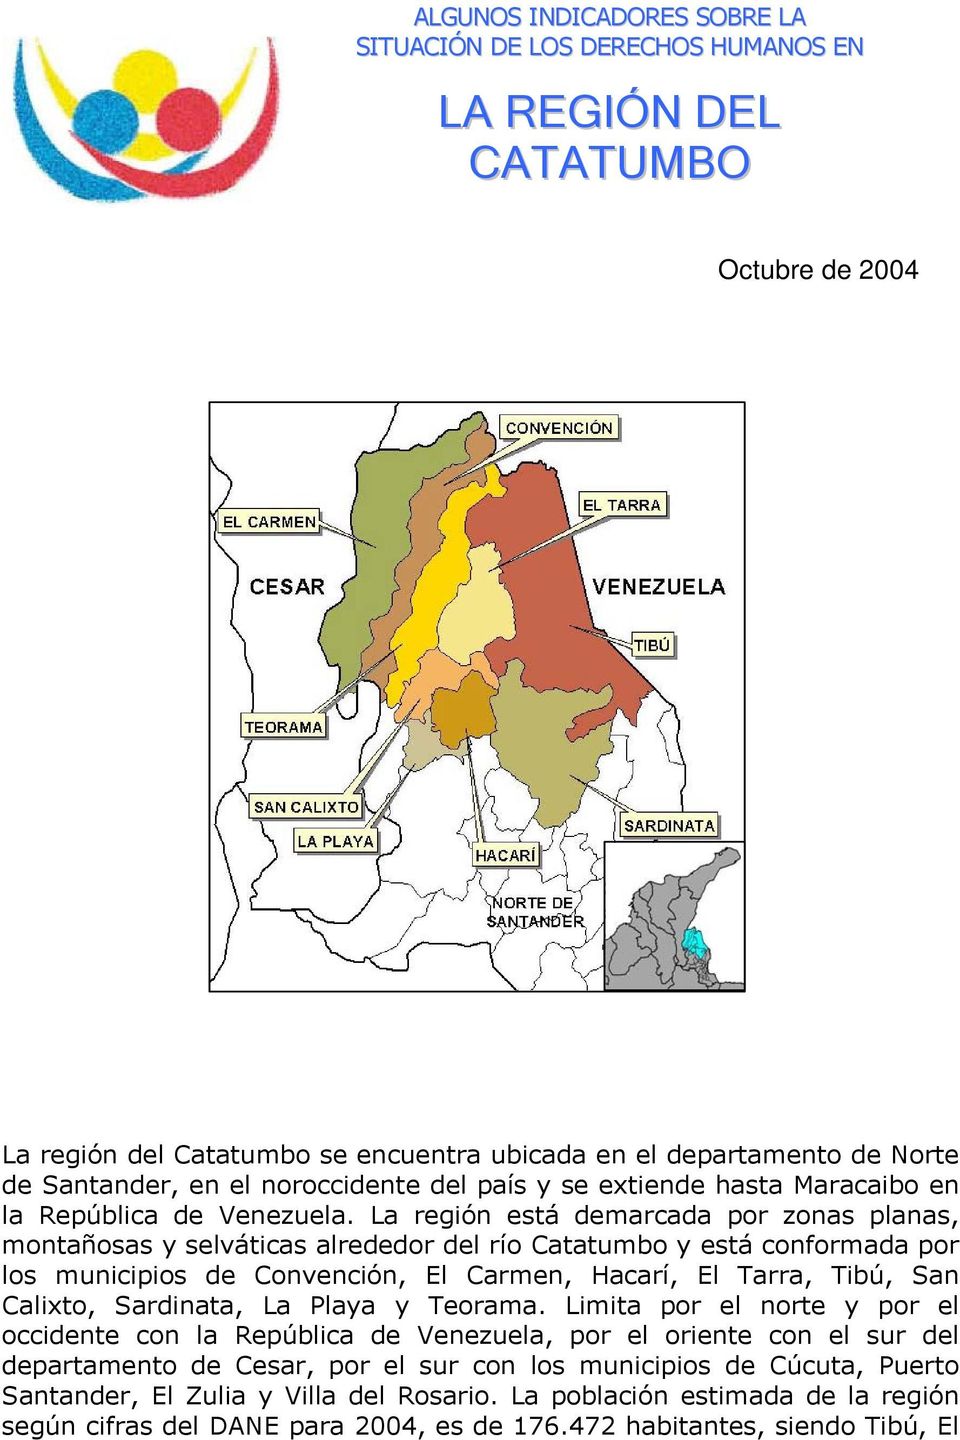 La región está demarcada por zonas planas, montañosas y selváticas alrededor del río Catatumbo y está conformada por los municipios de Convención, El Carmen, Hacarí, El Tarra, Tibú, San Calixto,